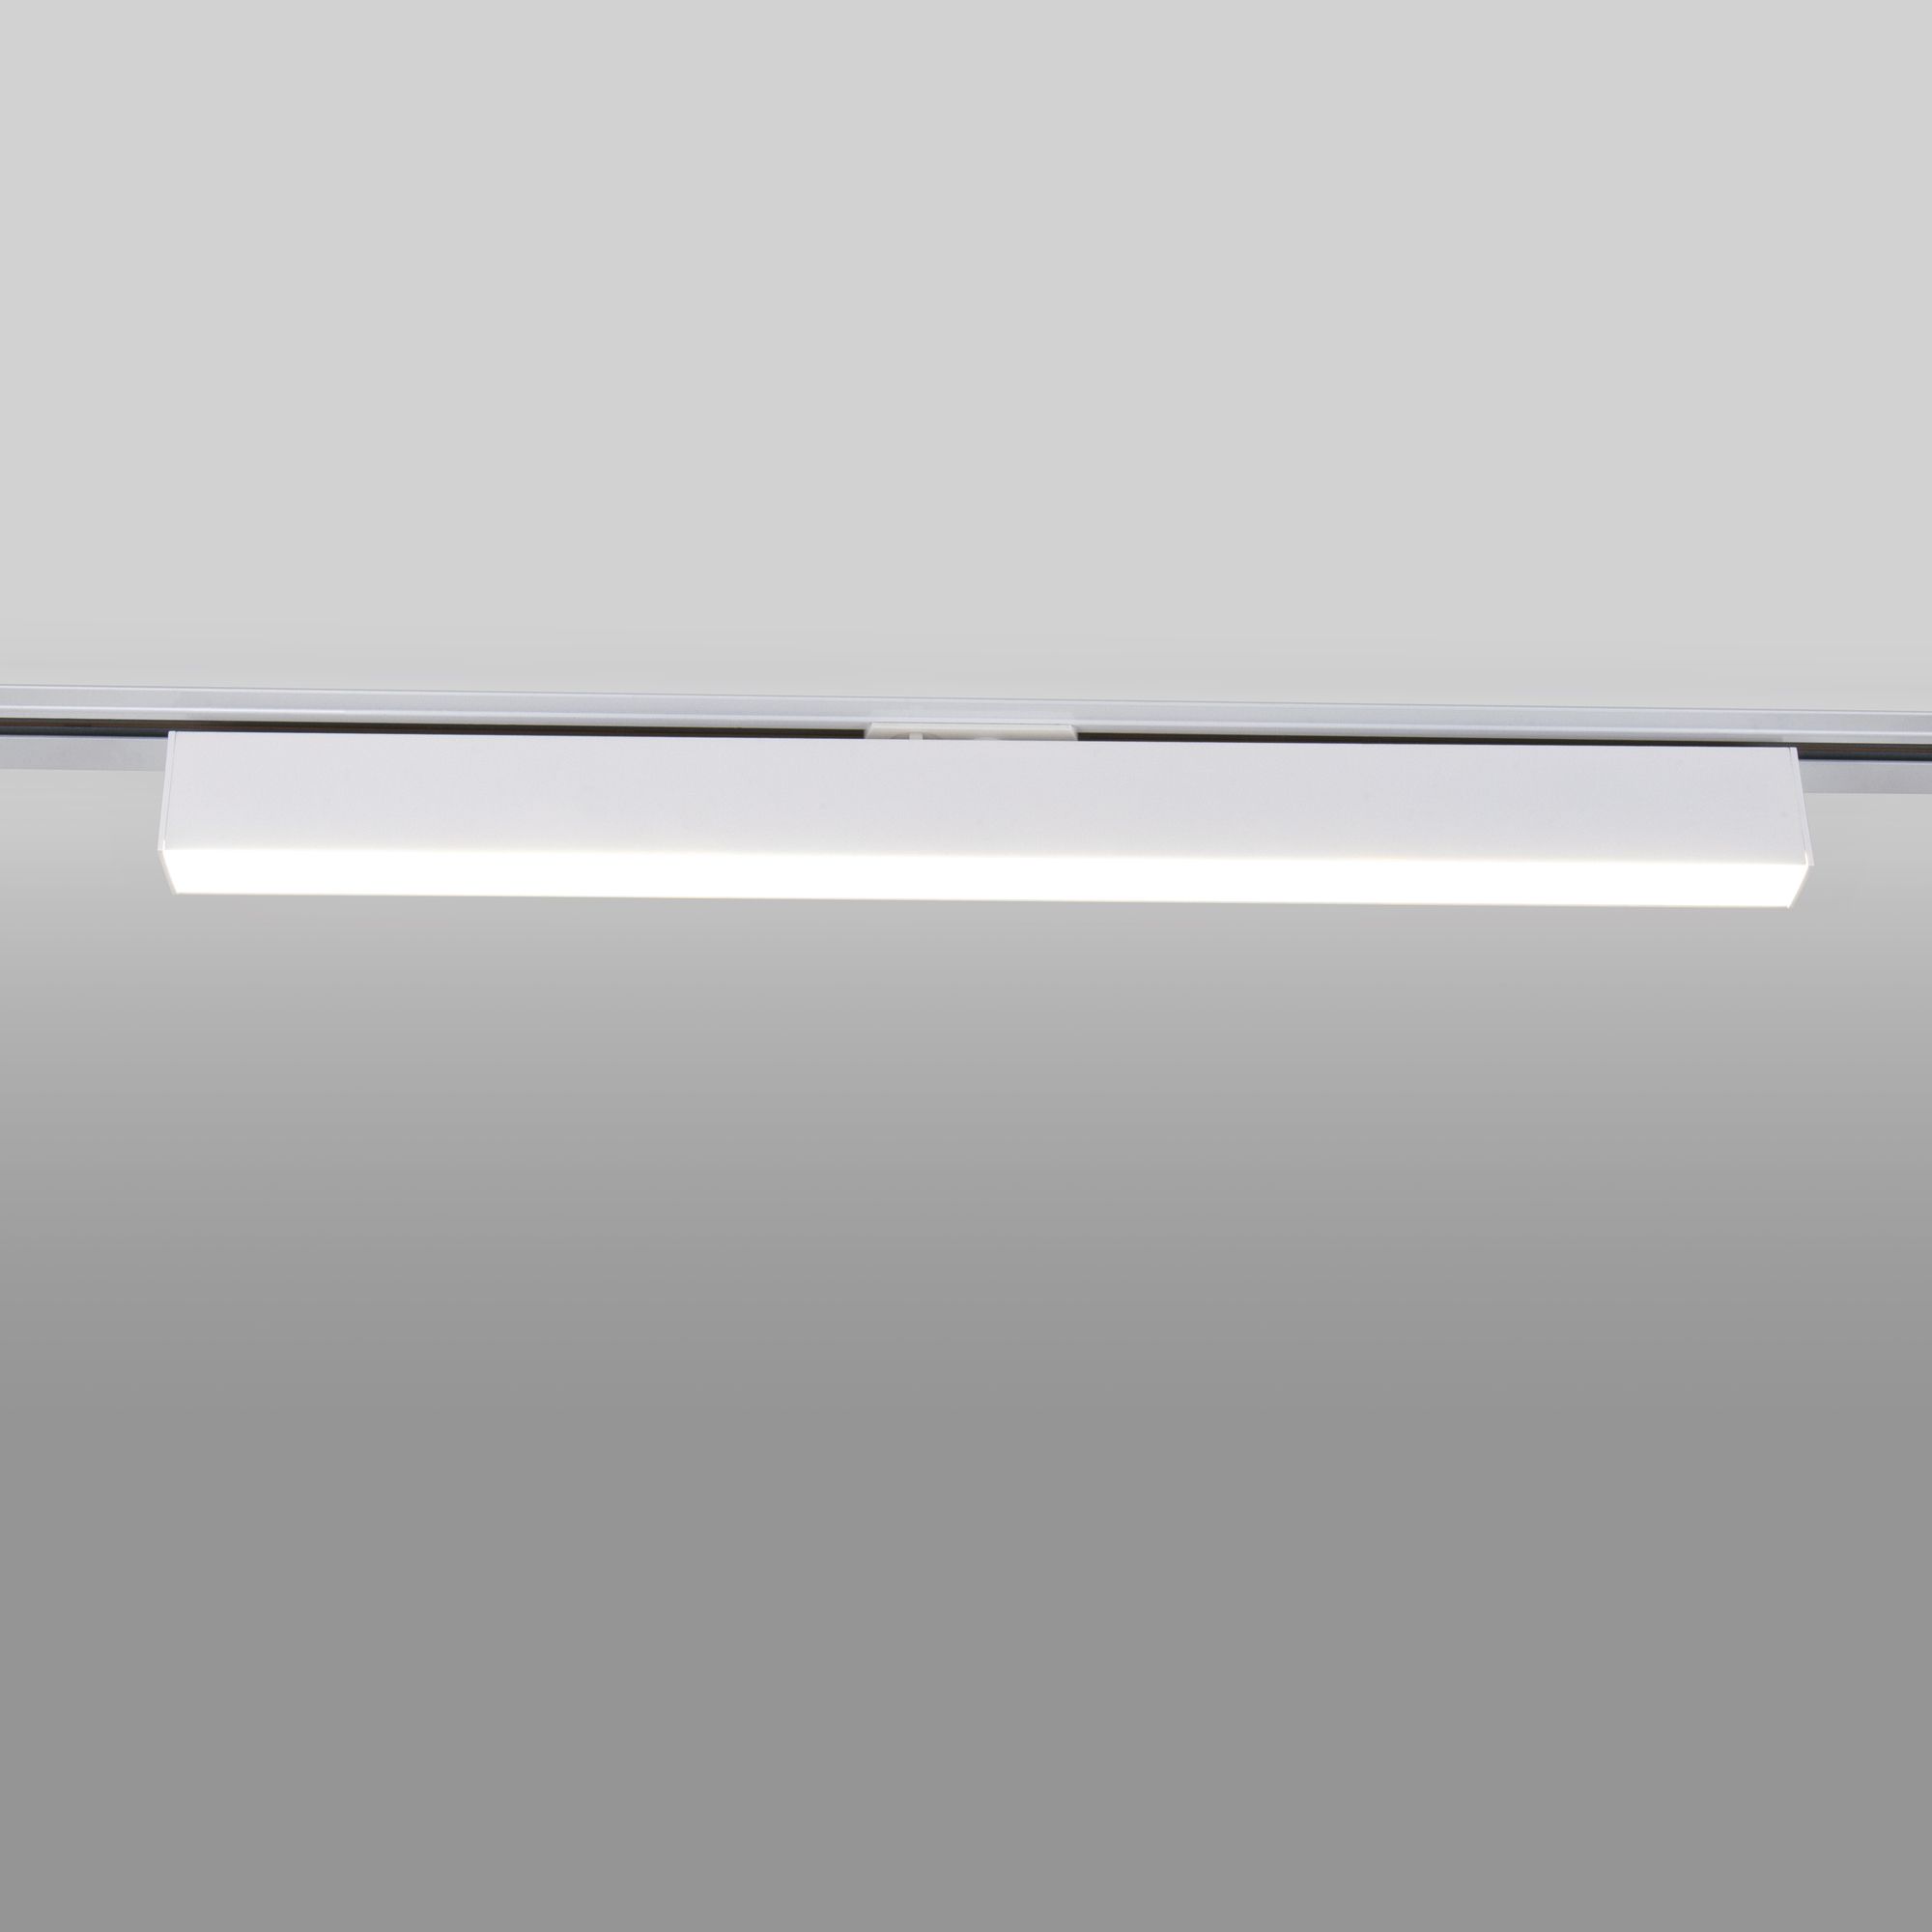 Basic System Трековый светильник 20W 4200K X-Line (белый матовый) X-Line белый матовый 20W 4200K (LTB54) однофазный